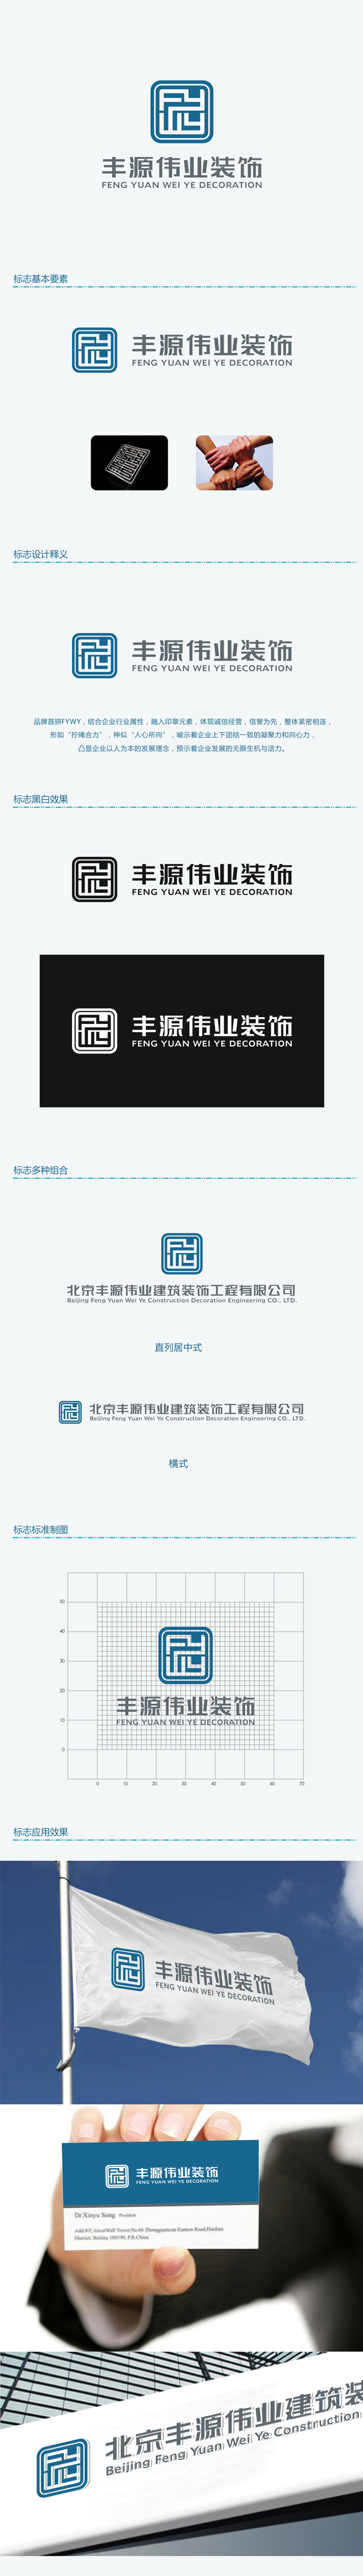 赵锡涛的北京丰源伟业建筑装饰工程有限公司logo设计